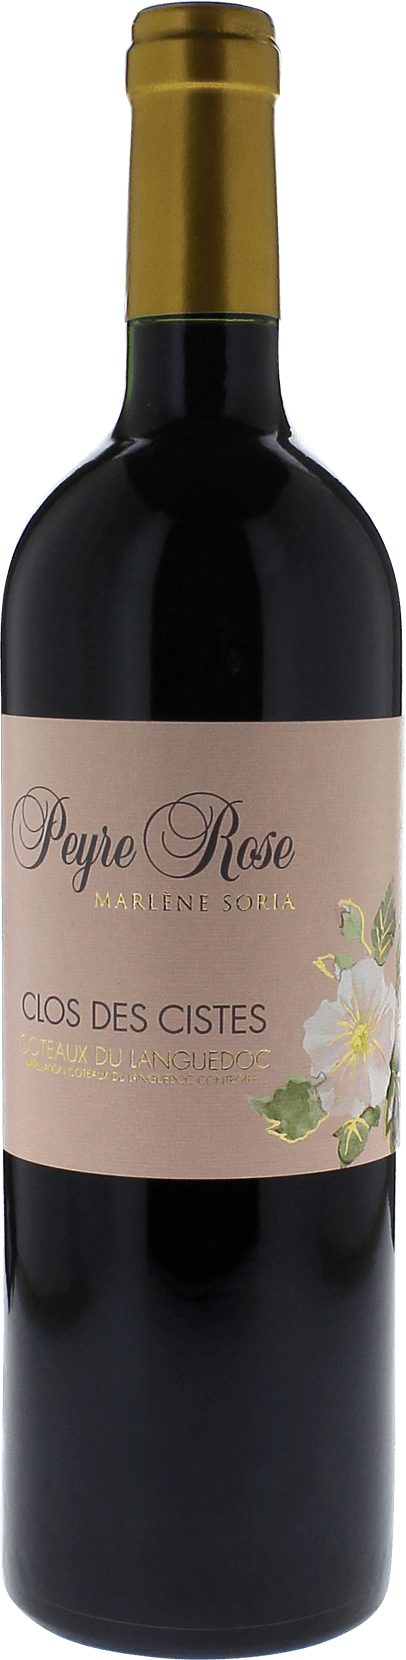 Peyre rose clos des cistes 1995  Coteaux du languedoc AOC, Languedoc